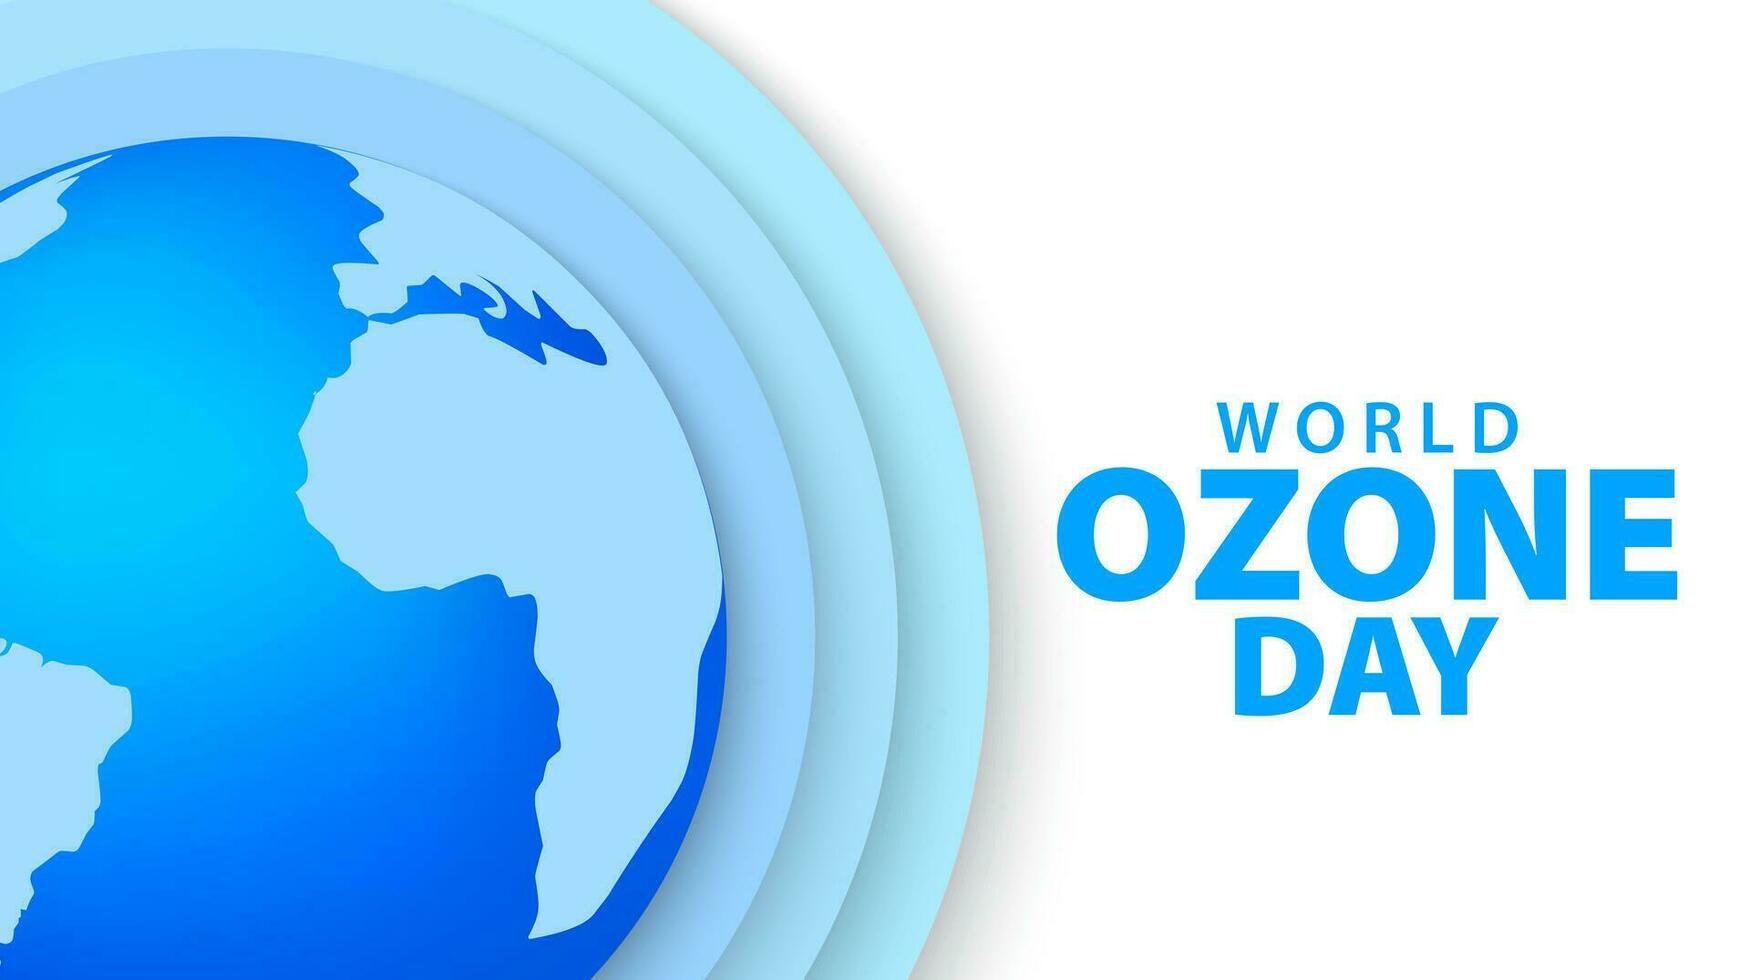 monde ozone journée concept Contexte avec monde globe. ozone journée papier Couper conception. vecteur illustration